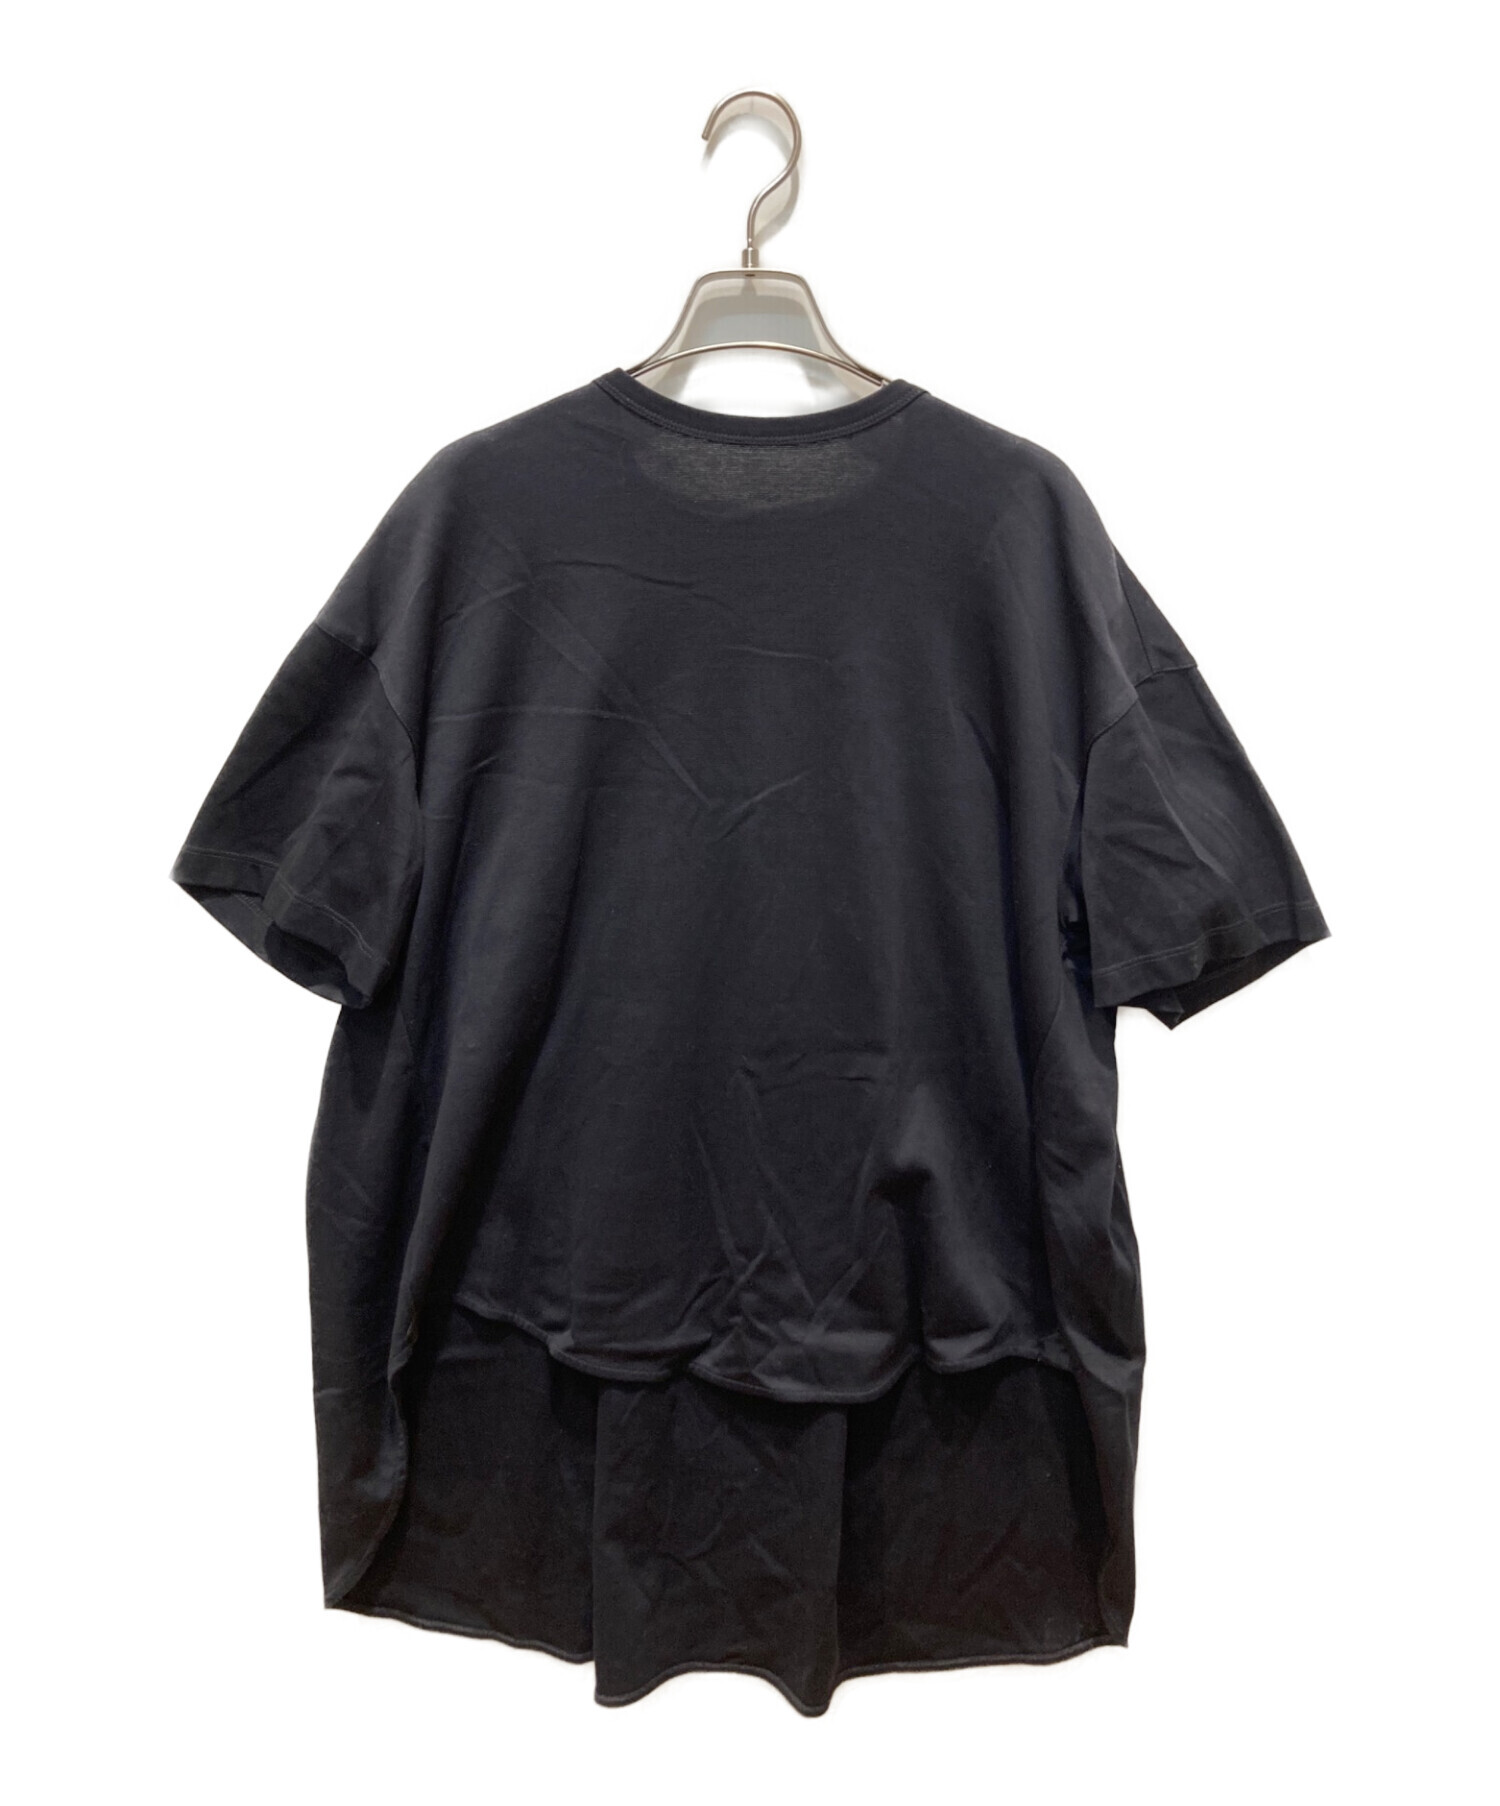 THE RERACS (ザ リラクス) バックデザインTシャツ ブラック サイズ:36